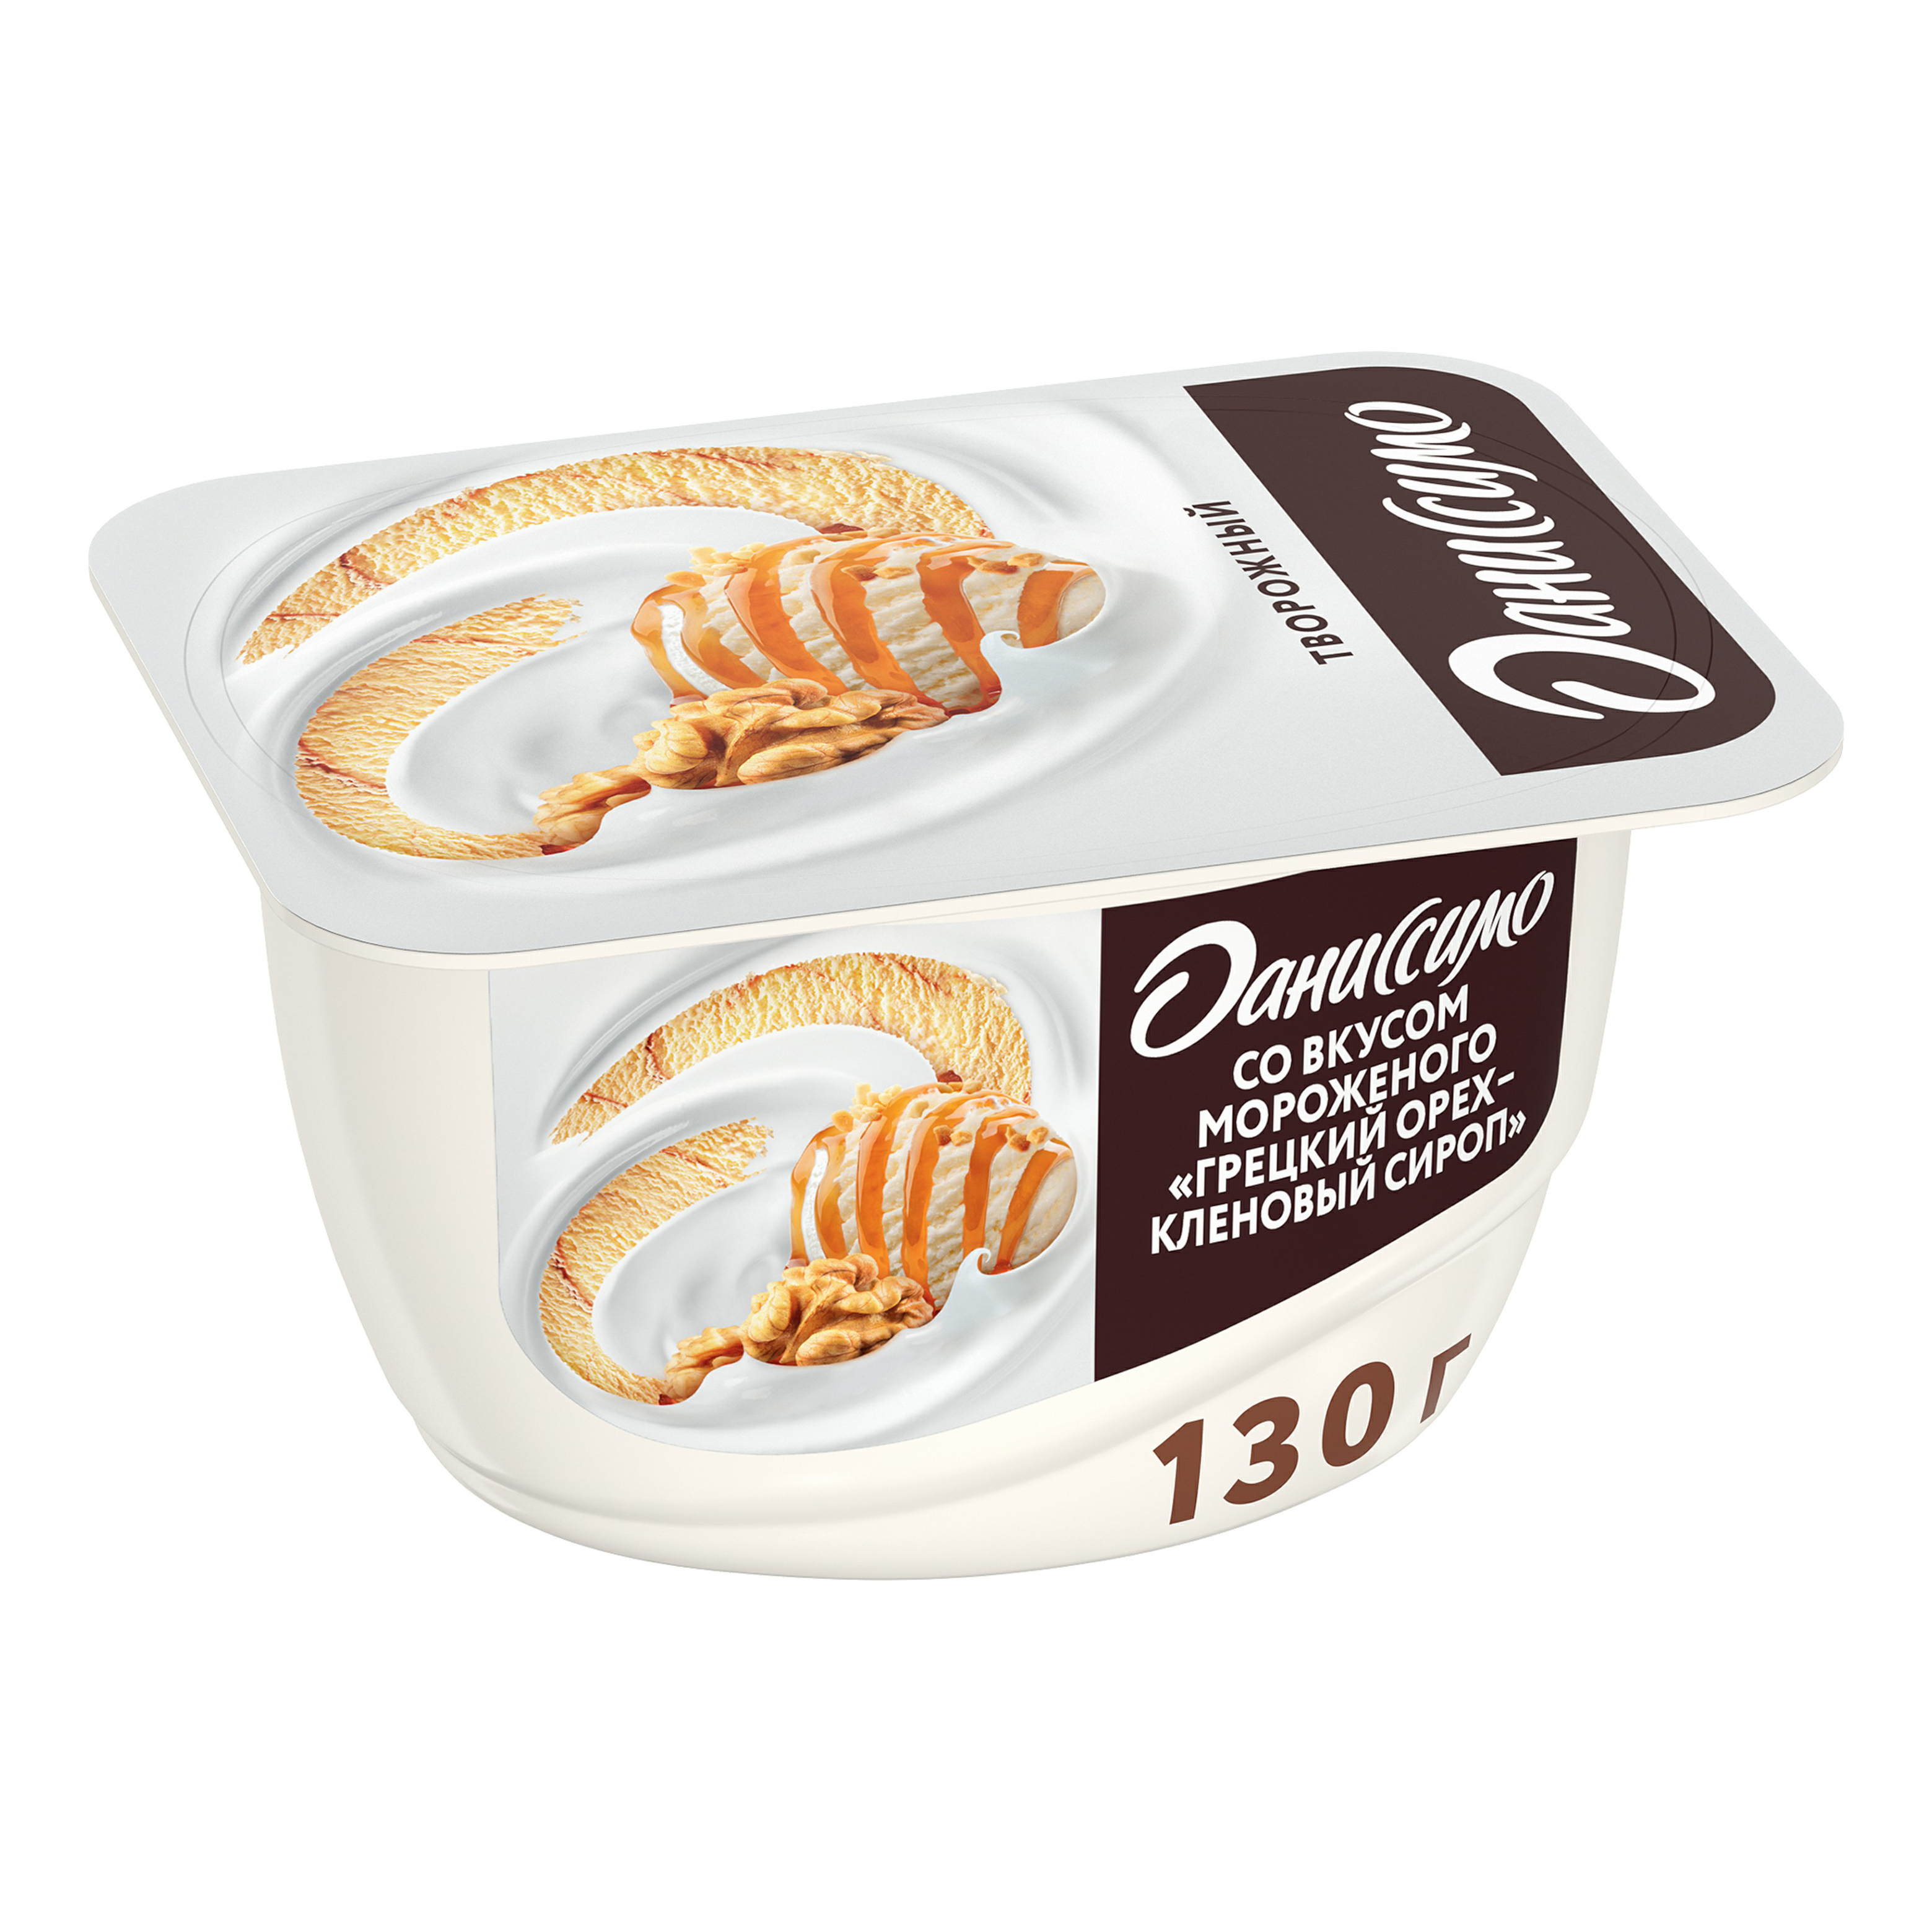 Продукт творожный Danone Даниссимо мороженое-грецкий орех-кленовый сироп 5,9% 130 г